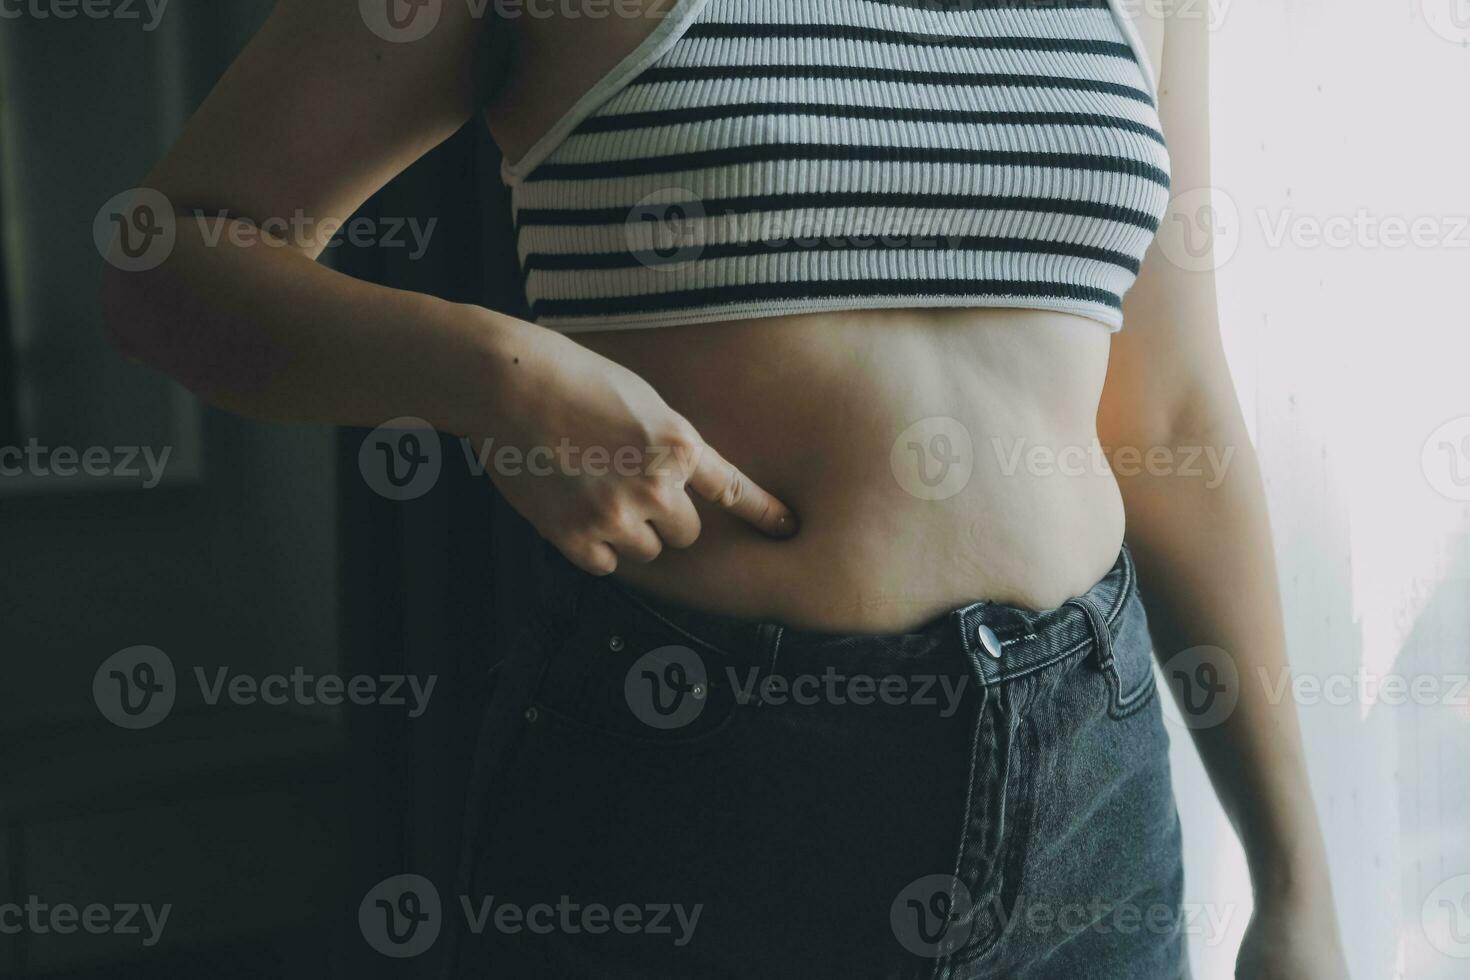 mulheres corpo gordo barriga. obeso mulher mão segurando excessivo barriga gordo. dieta estilo de vida conceito para reduzir barriga e forma acima saudável estômago músculo. foto